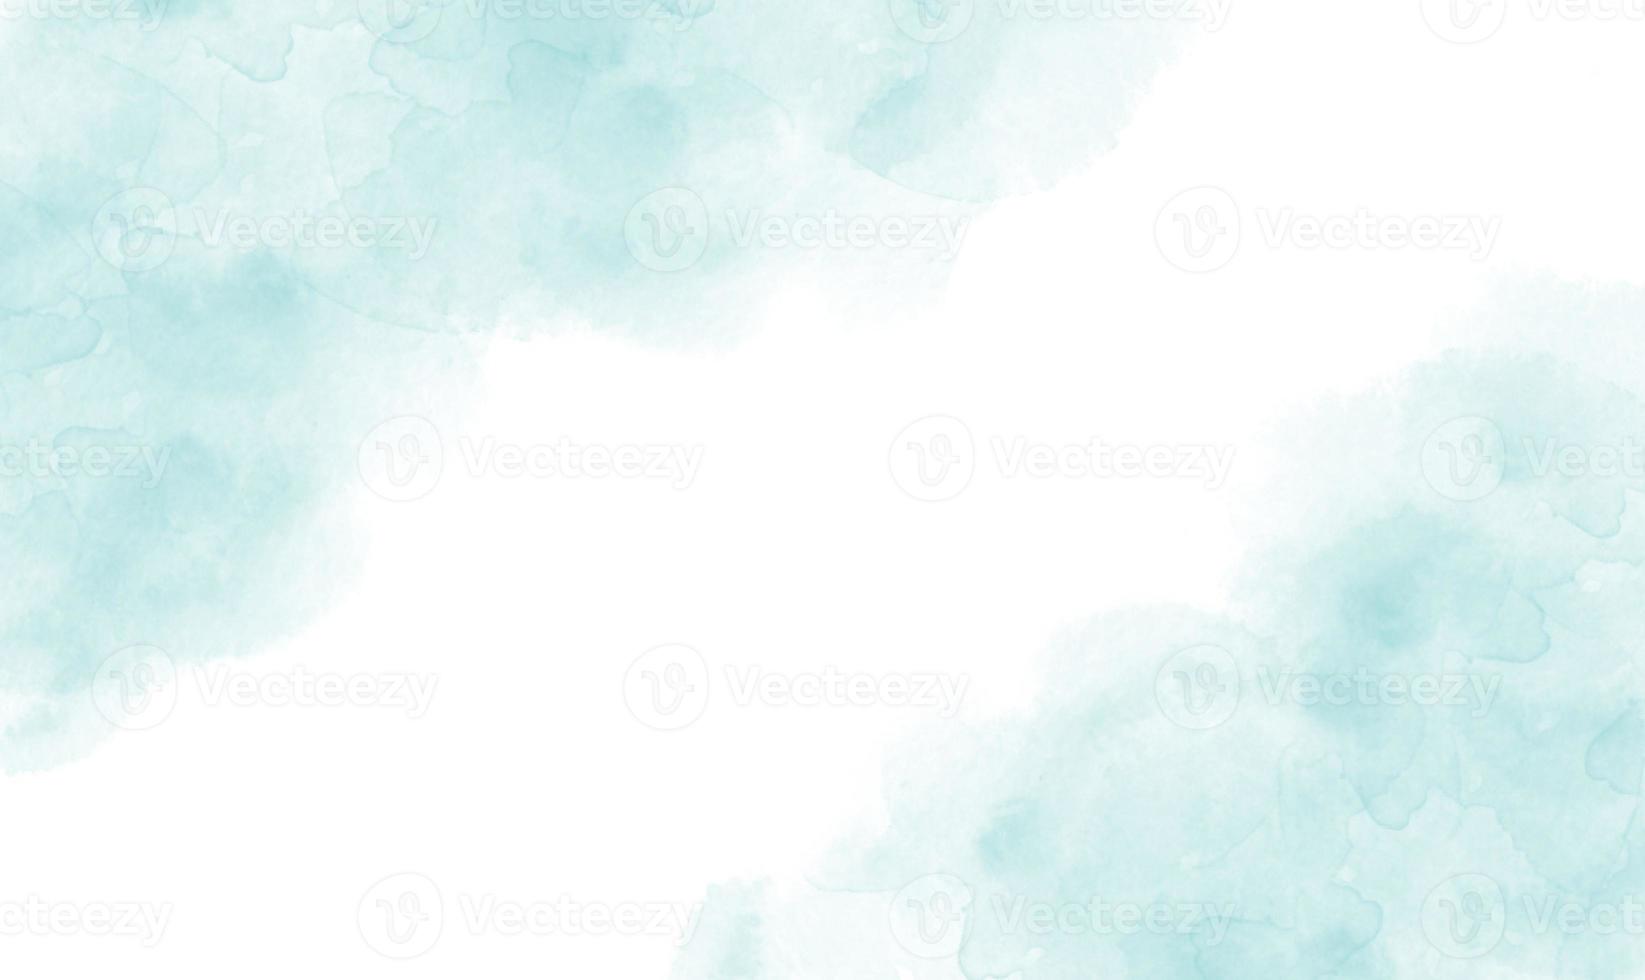 aquarela azul abstrata ou arte de tinta de álcool com fundo branco, efeito de desenho de mármore pastel. modelo de design de ilustração para convite de casamento, decoração, banner, plano de fundo foto